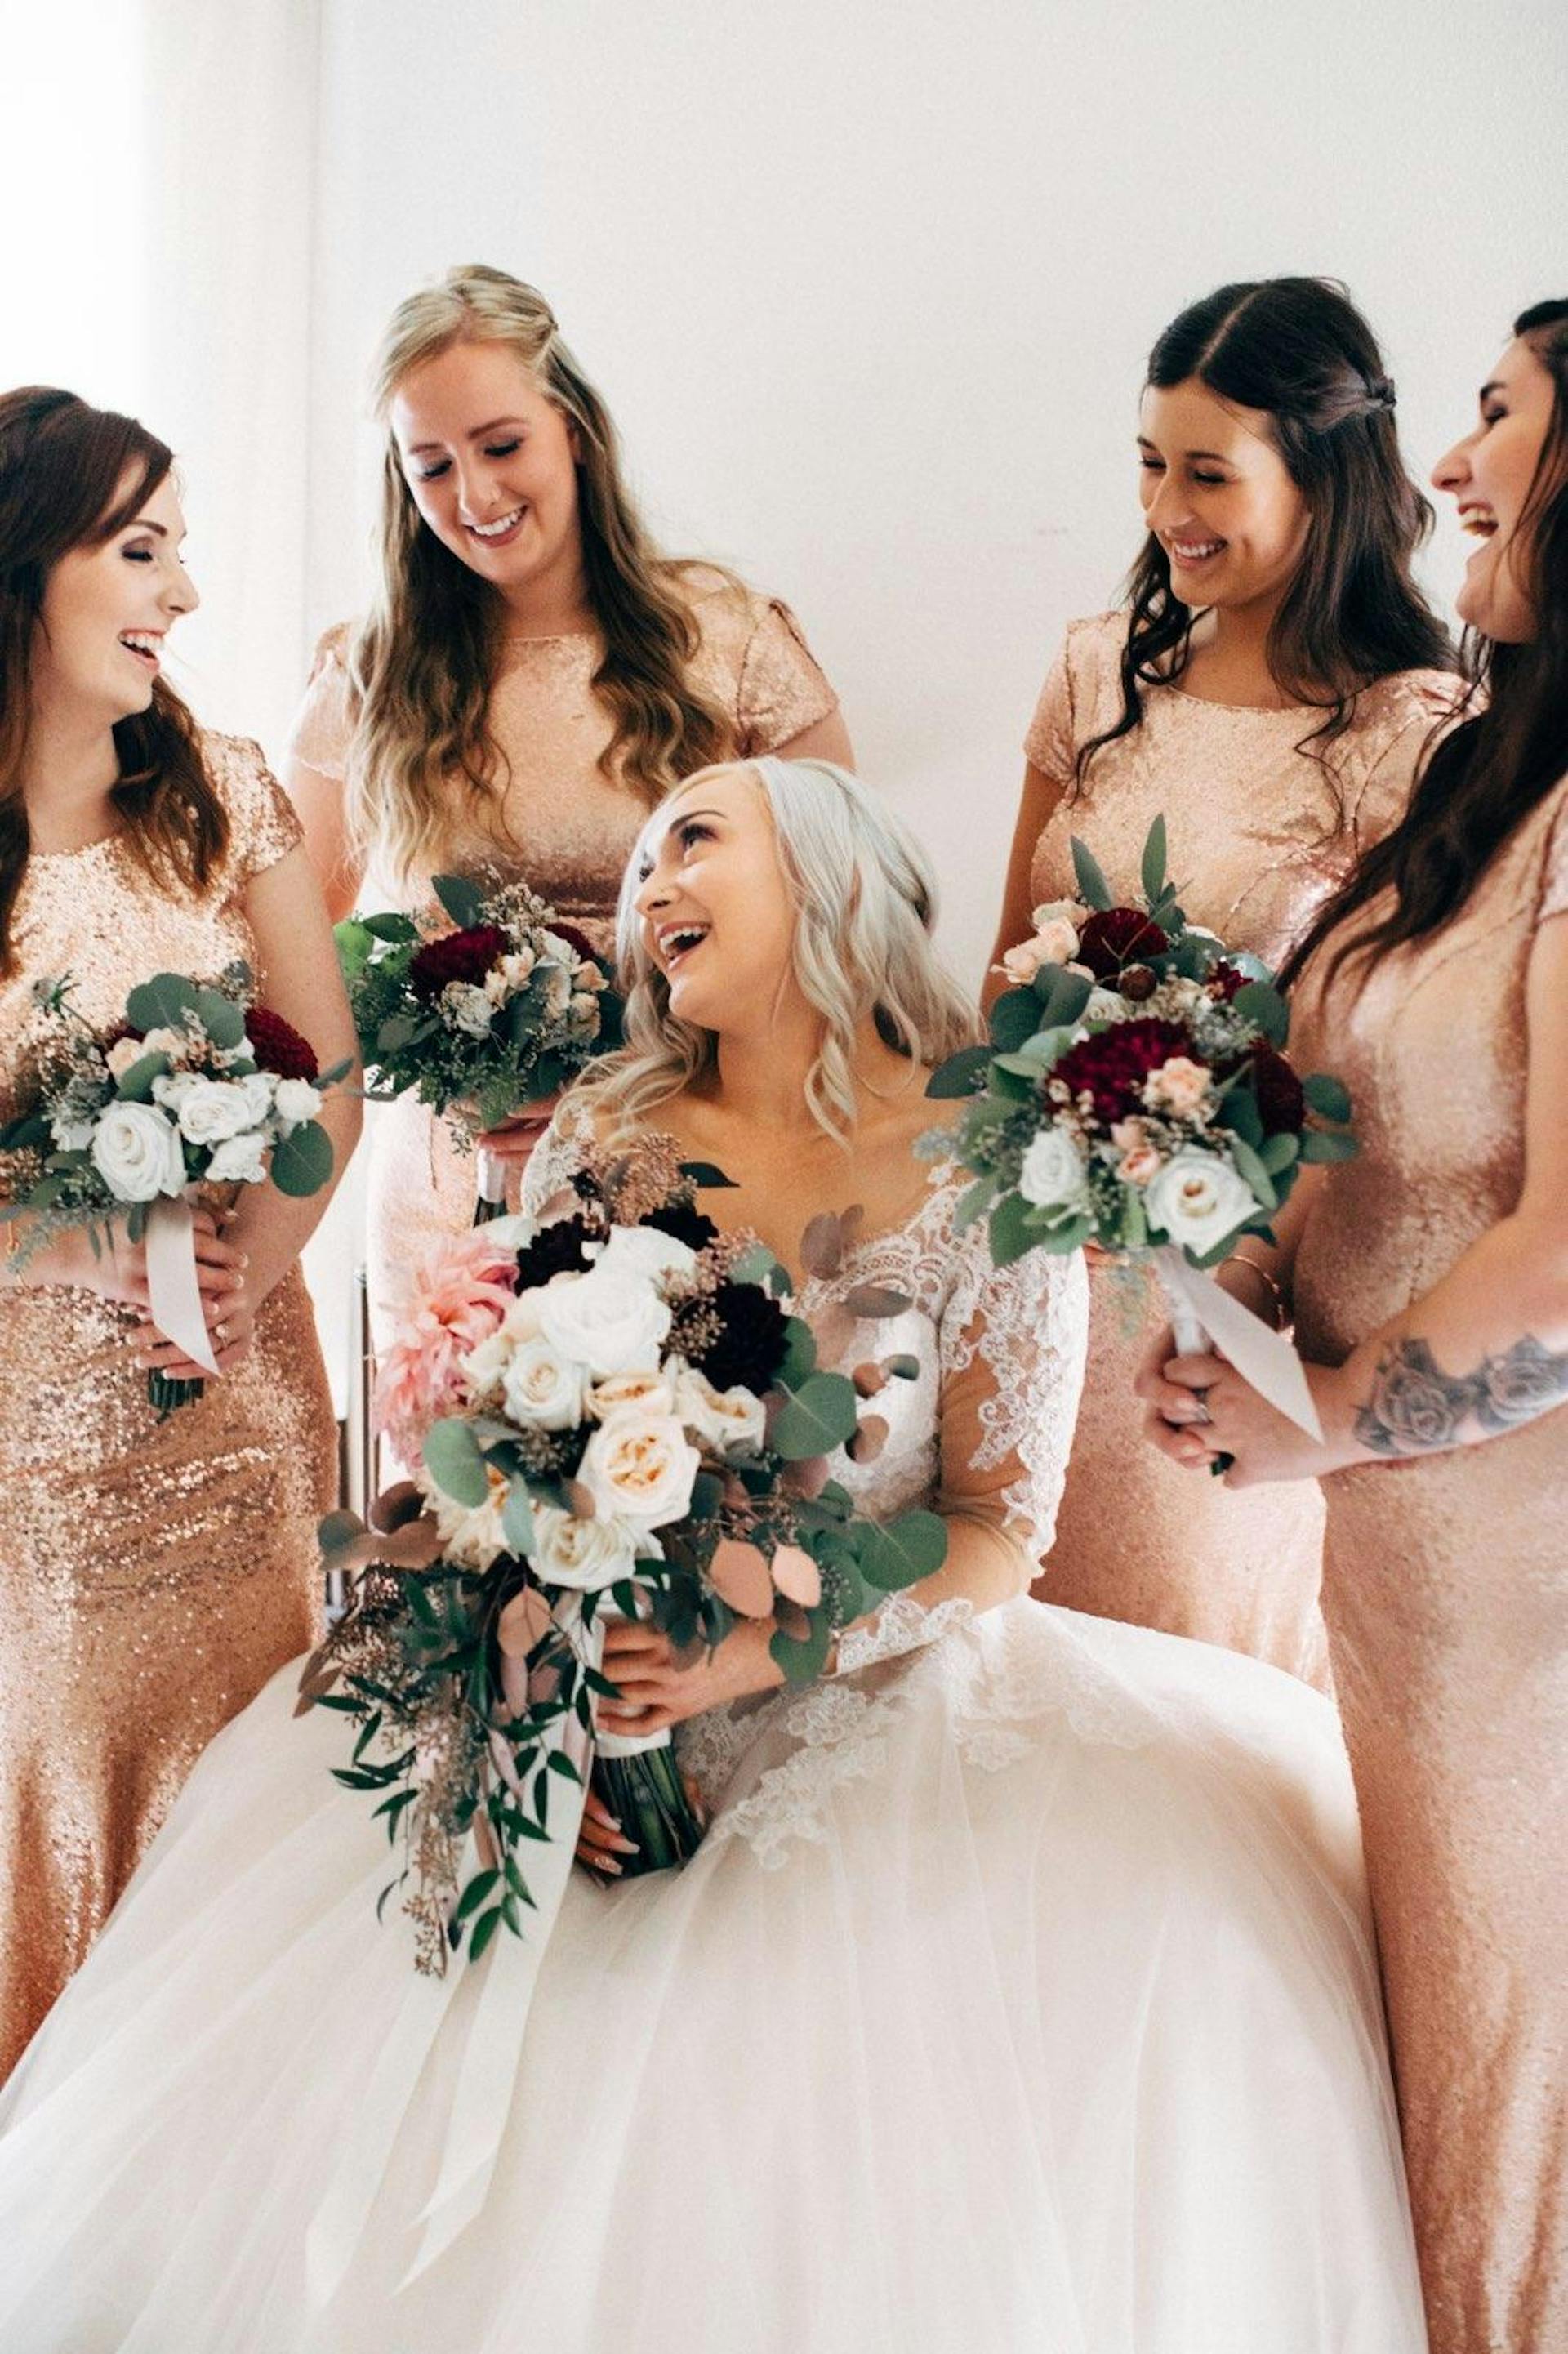 Une mariée heureuse et ses demoiselles d'honneur tenant des bouquets | Source : Pexels